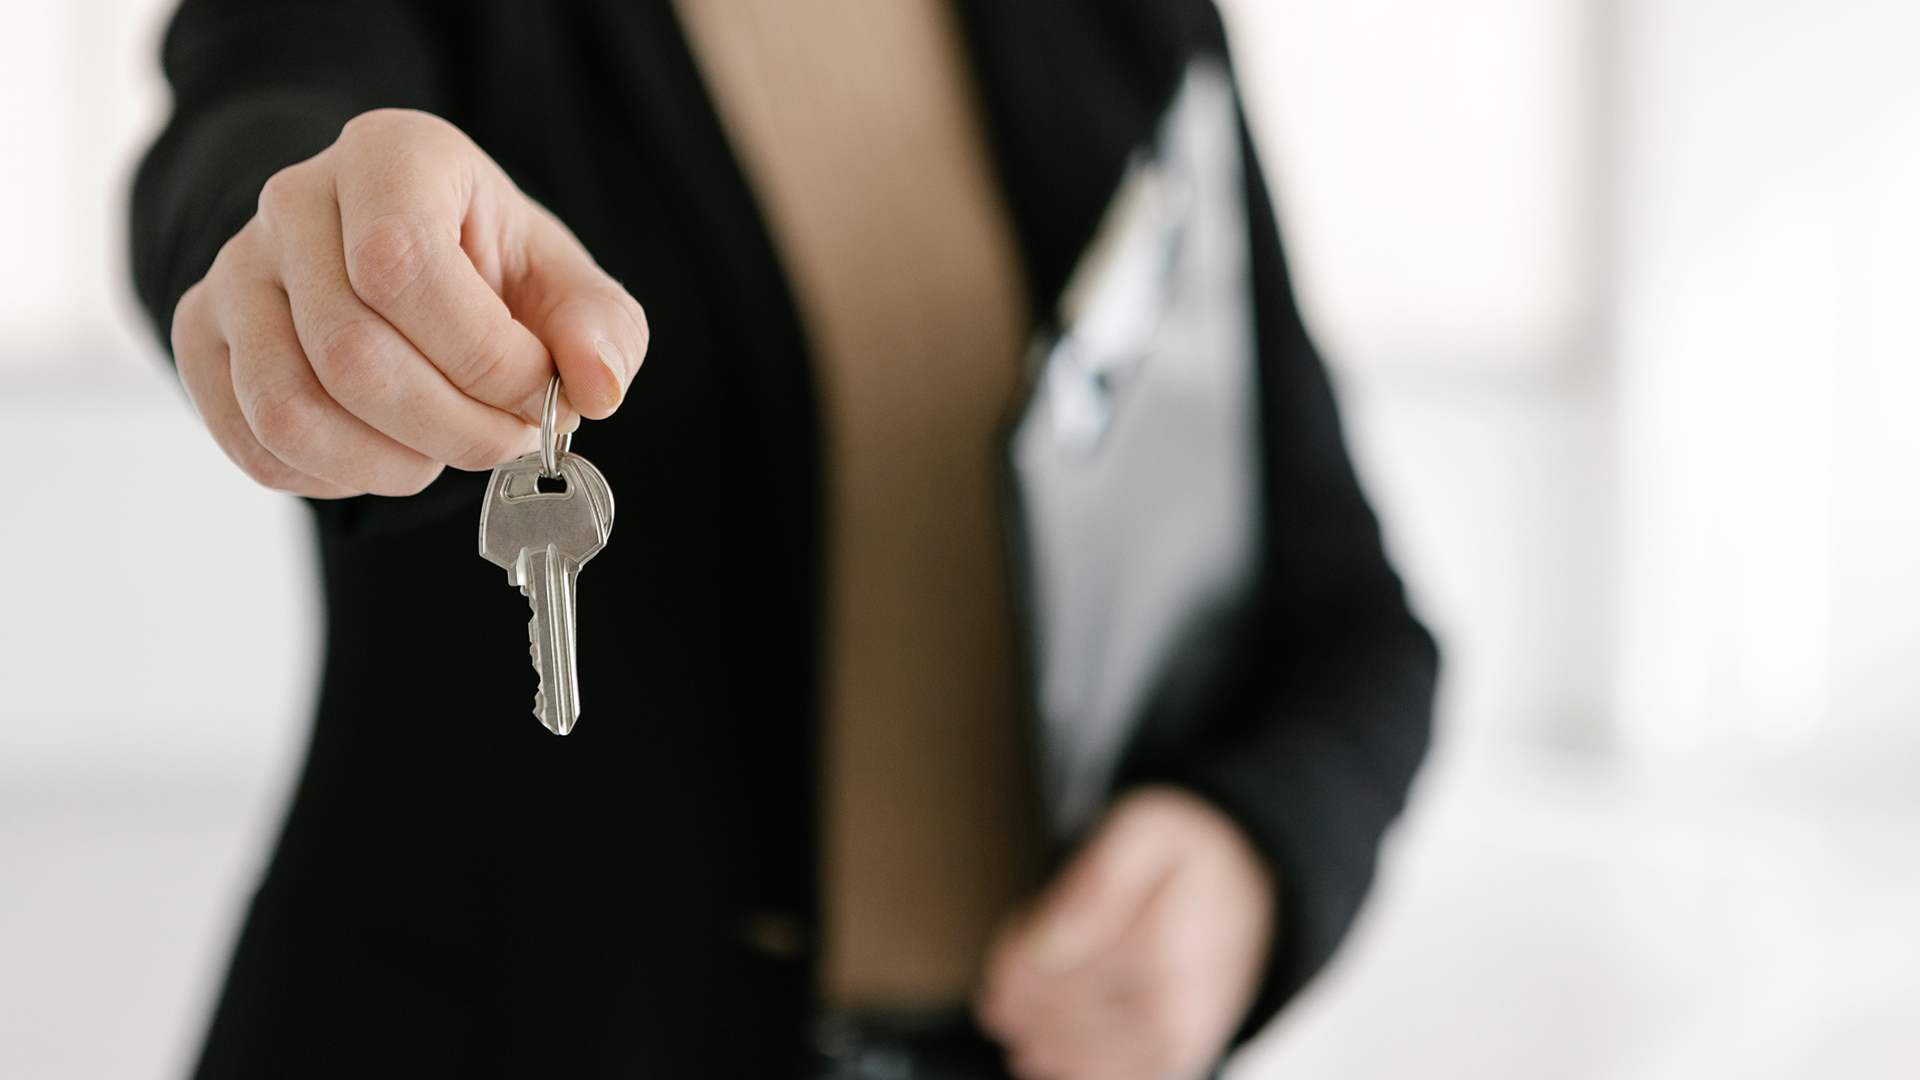 Las inmobiliarias se escudan en el “desconocimiento” de la ley para cobrar honorarios ilegales al inquilino